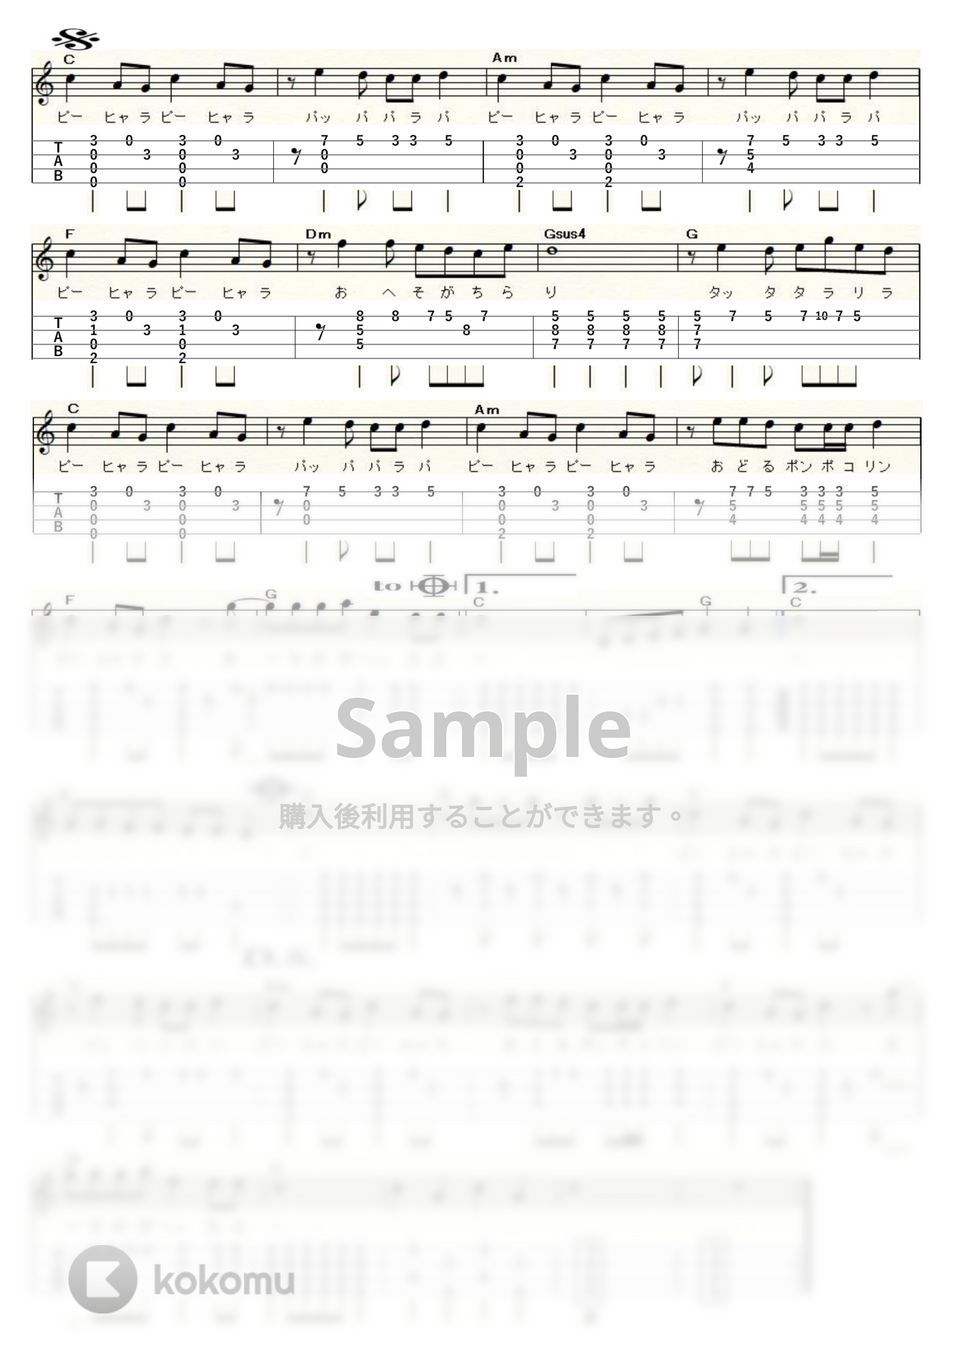 ちびまる子ちゃん - おどるポンポコリン (ｳｸﾚﾚｿﾛ / High-G,Low-G / 中級) by ukulelepapa